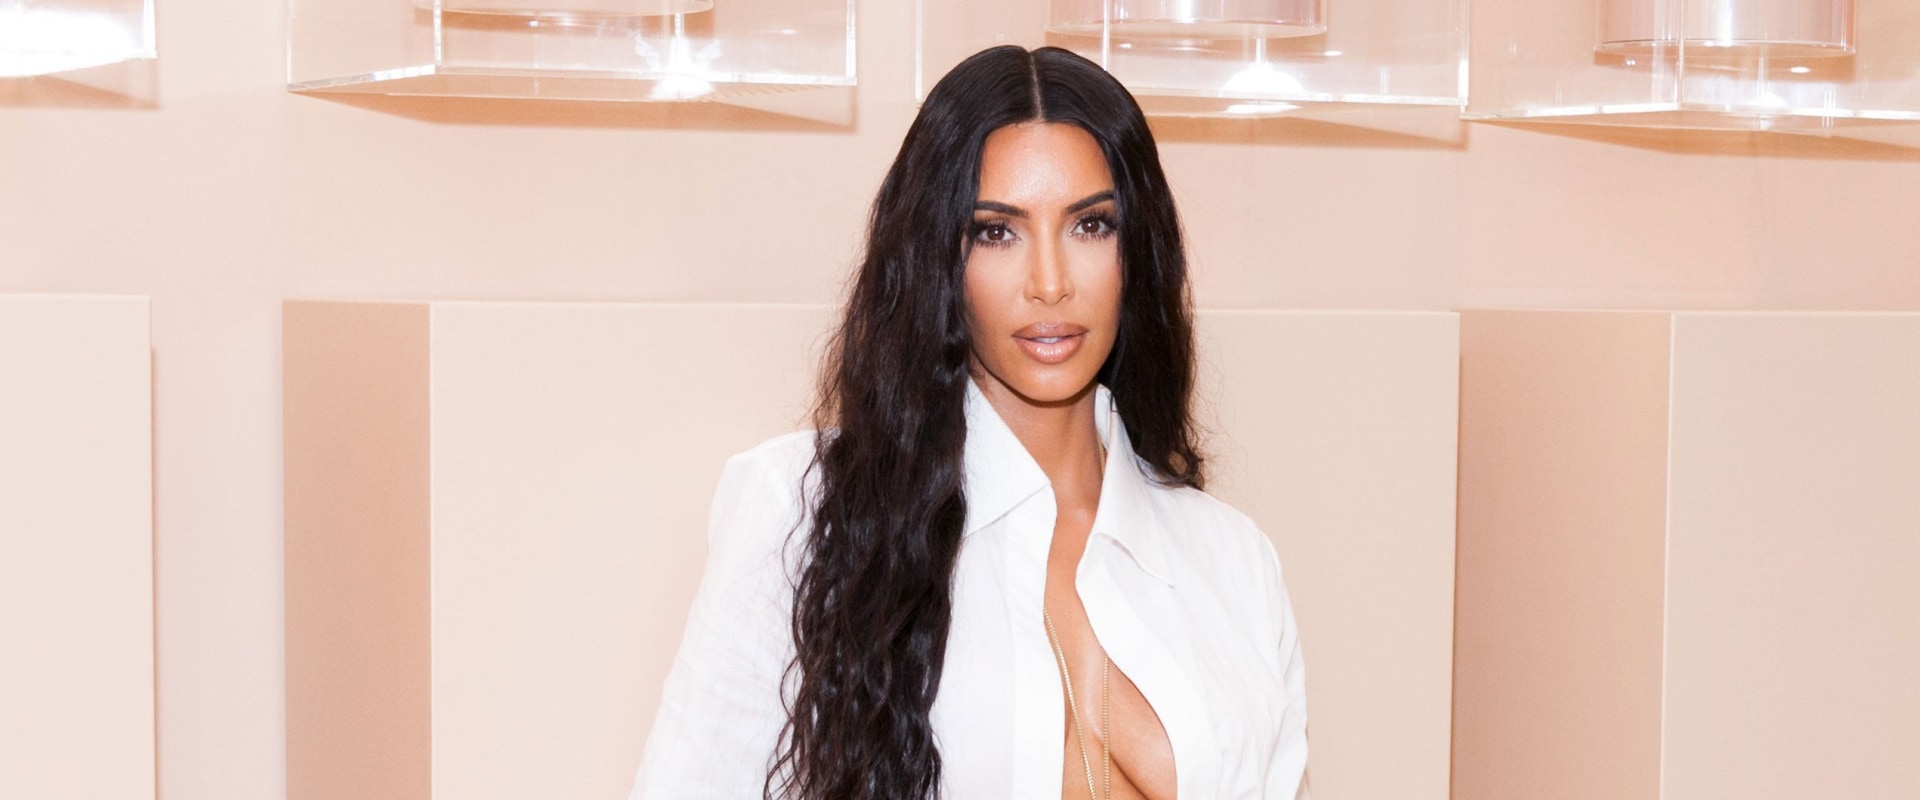 What Does Kim Kardashian Order at Starbucks?